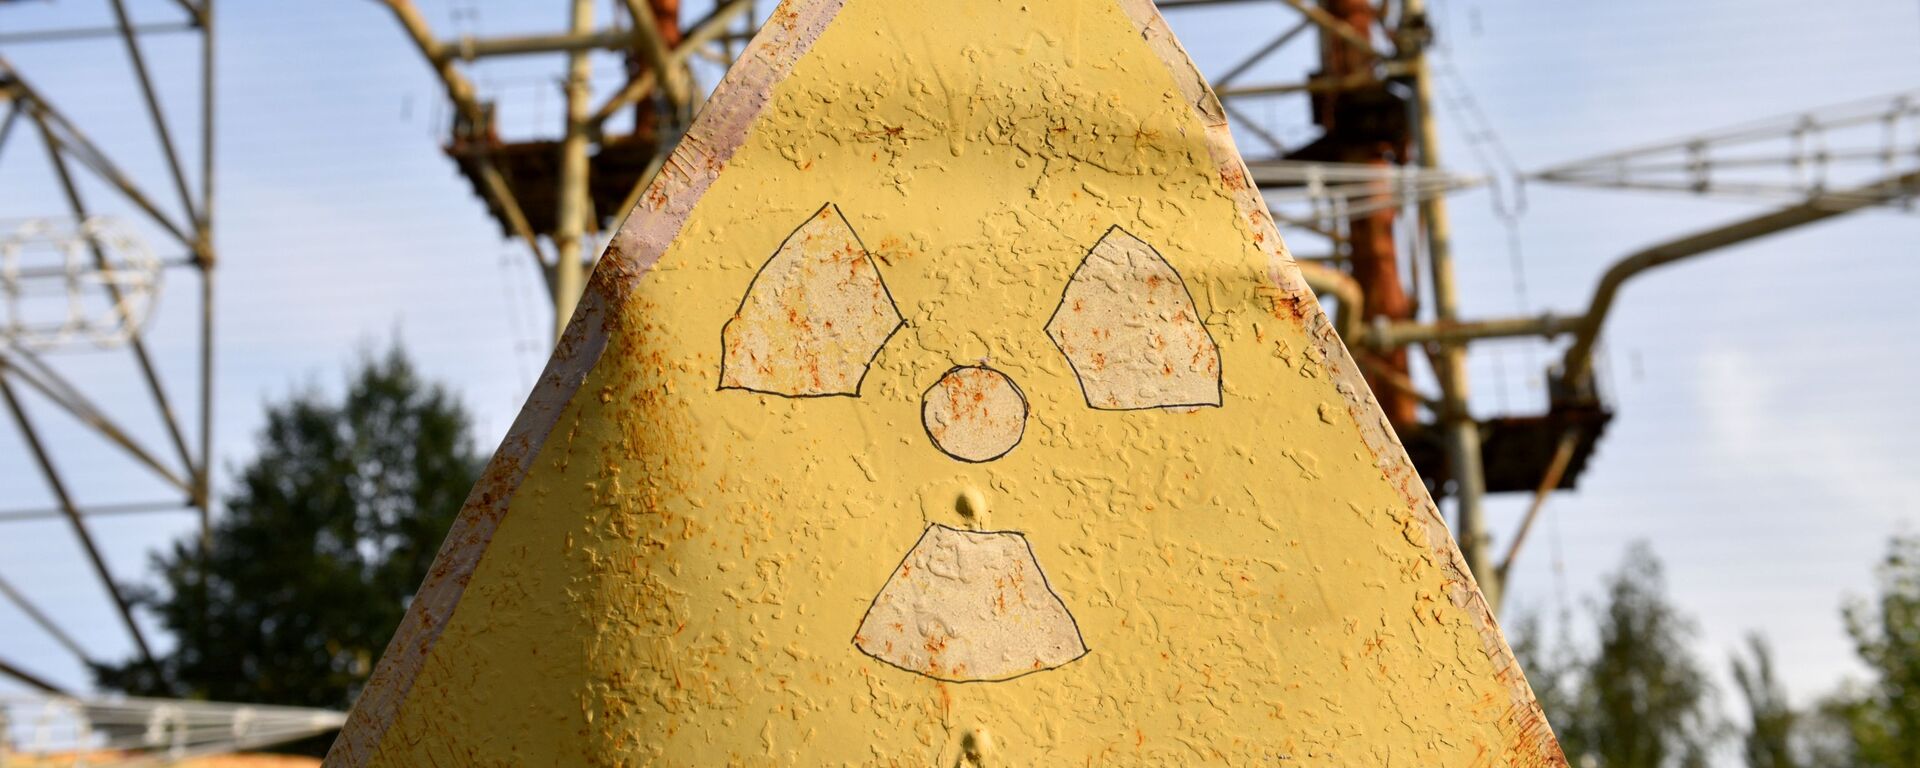 Знак радиации в зоне отчуждения Чернобыльской АЭС - Sputnik Lietuva, 1920, 13.10.2020